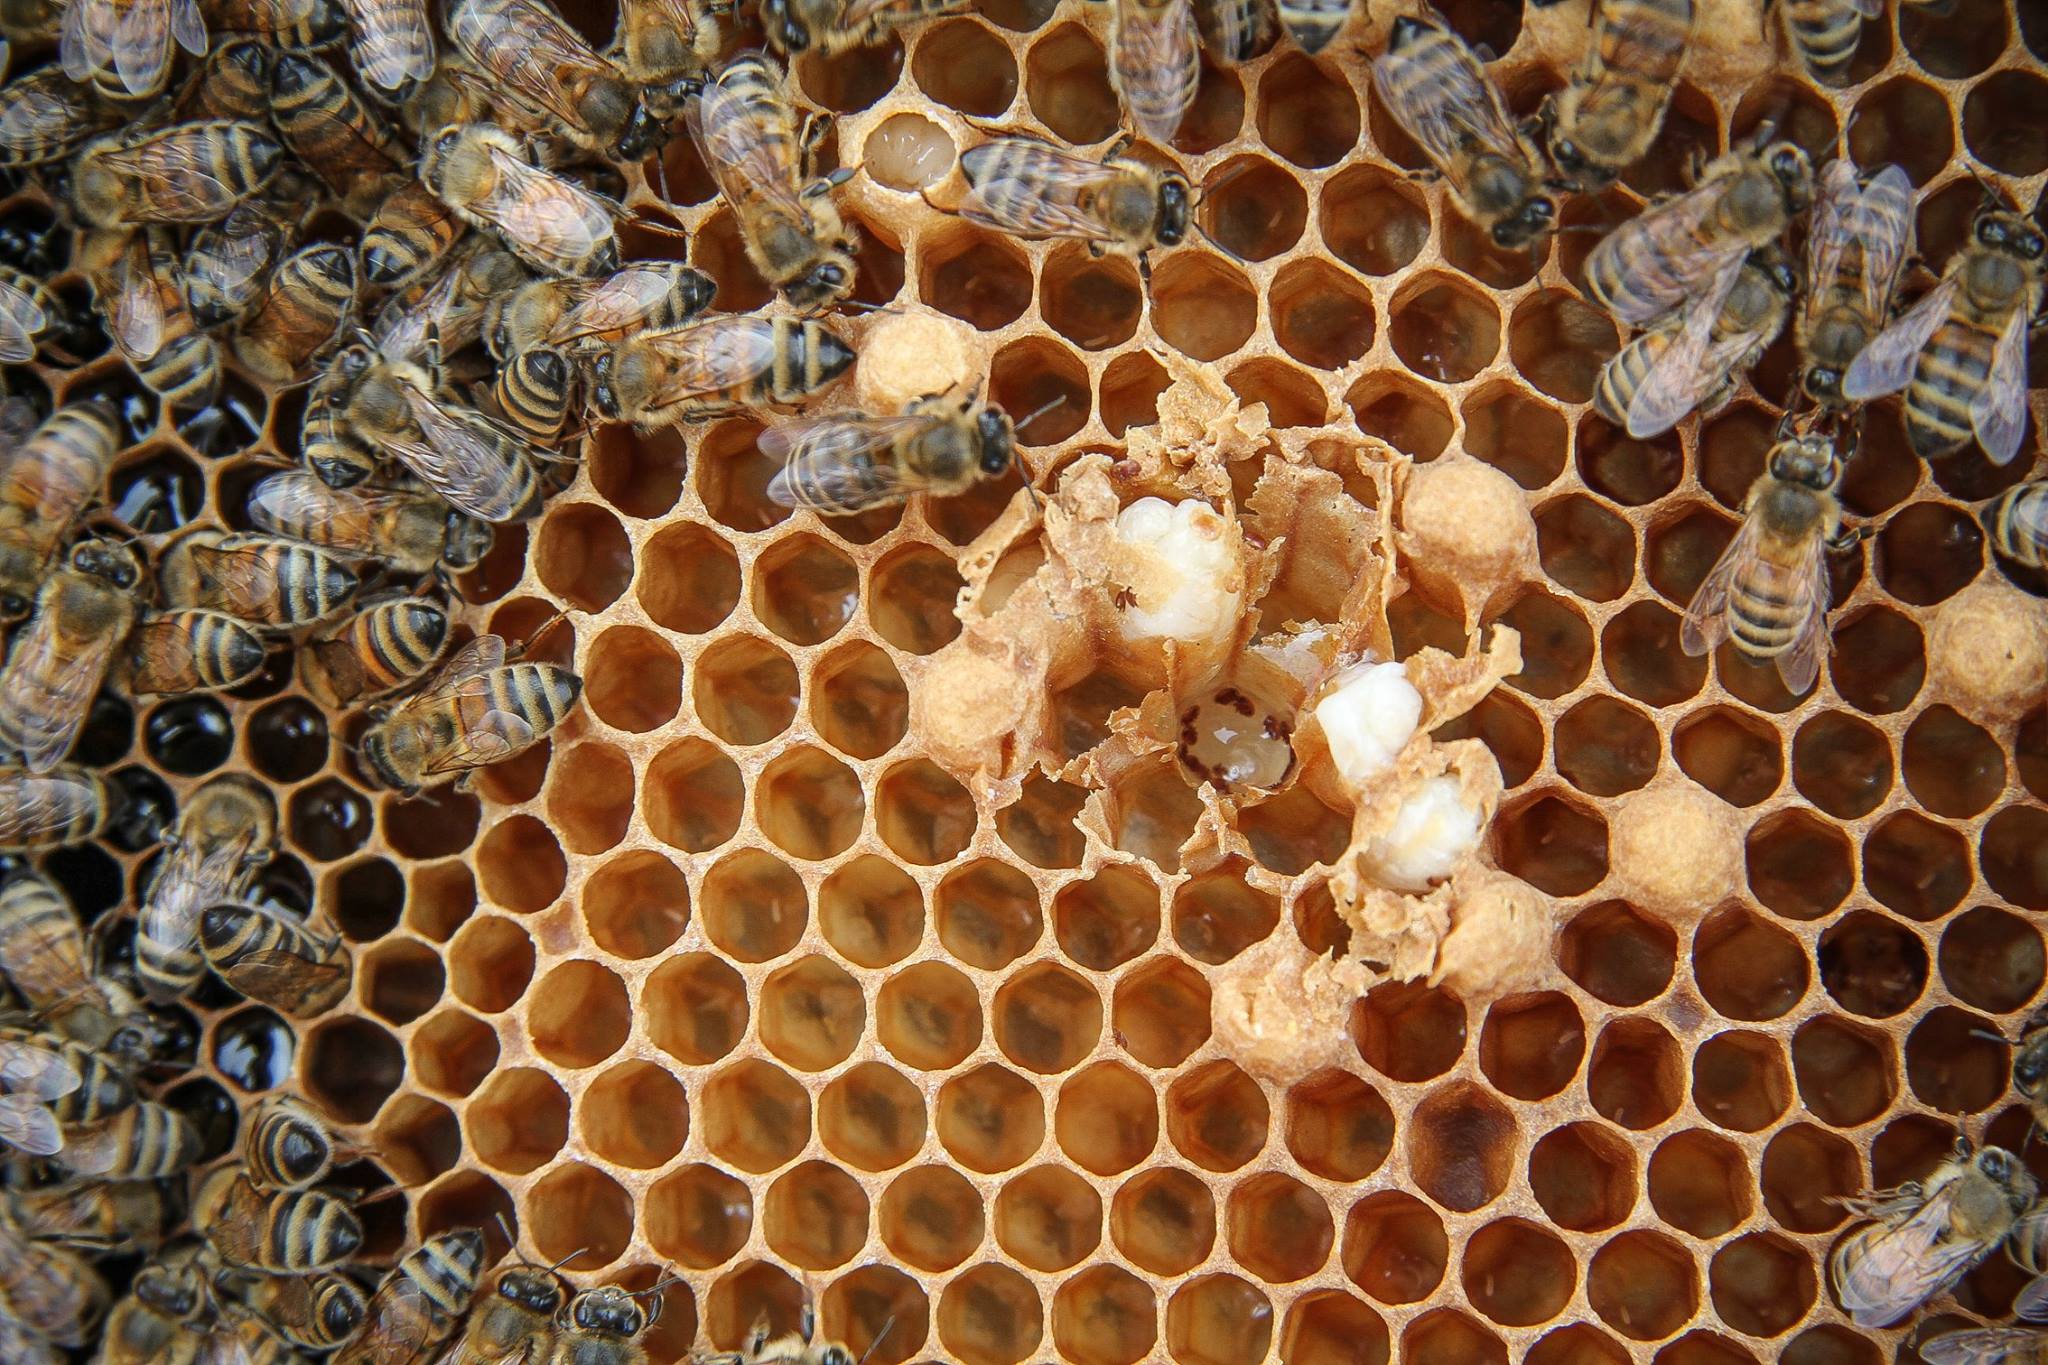 الفوعة تعتمد على درجة الحرارة من الفطرية إلزامية والاختيارية مسببات الأمراض من نحل العسل الحضنةTemperature dependent virulence of obligate and facultative fungal pathogens of honeybee brood